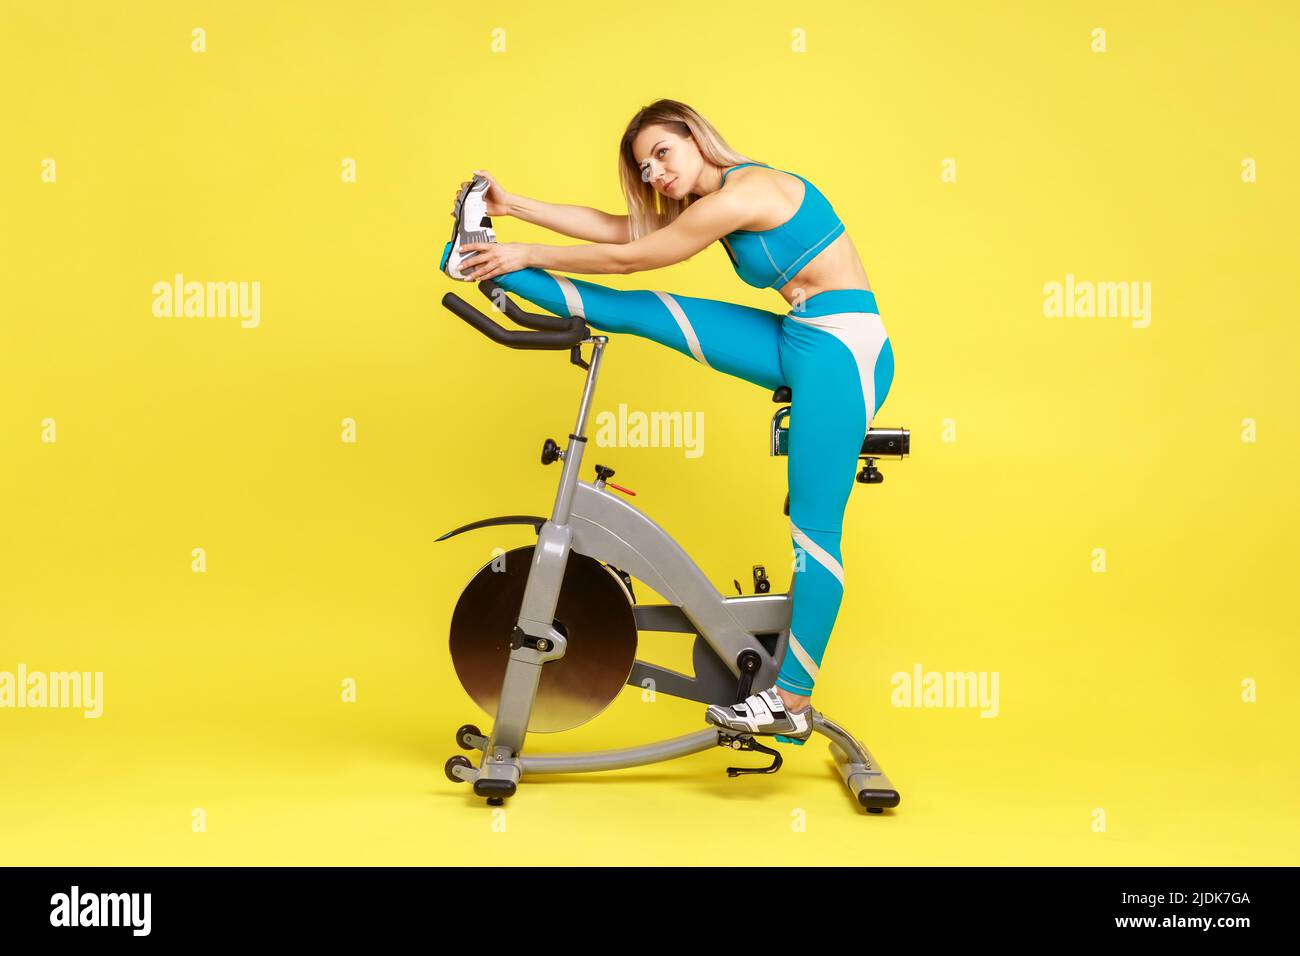 Ritratto di giovane adulto bella donna sportiva stretching gamba prima di allenarsi su simulatore di bicicletta, guardando via, indossando abbigliamento sportivo blu. Studio interno girato isolato su sfondo giallo. Foto Stock